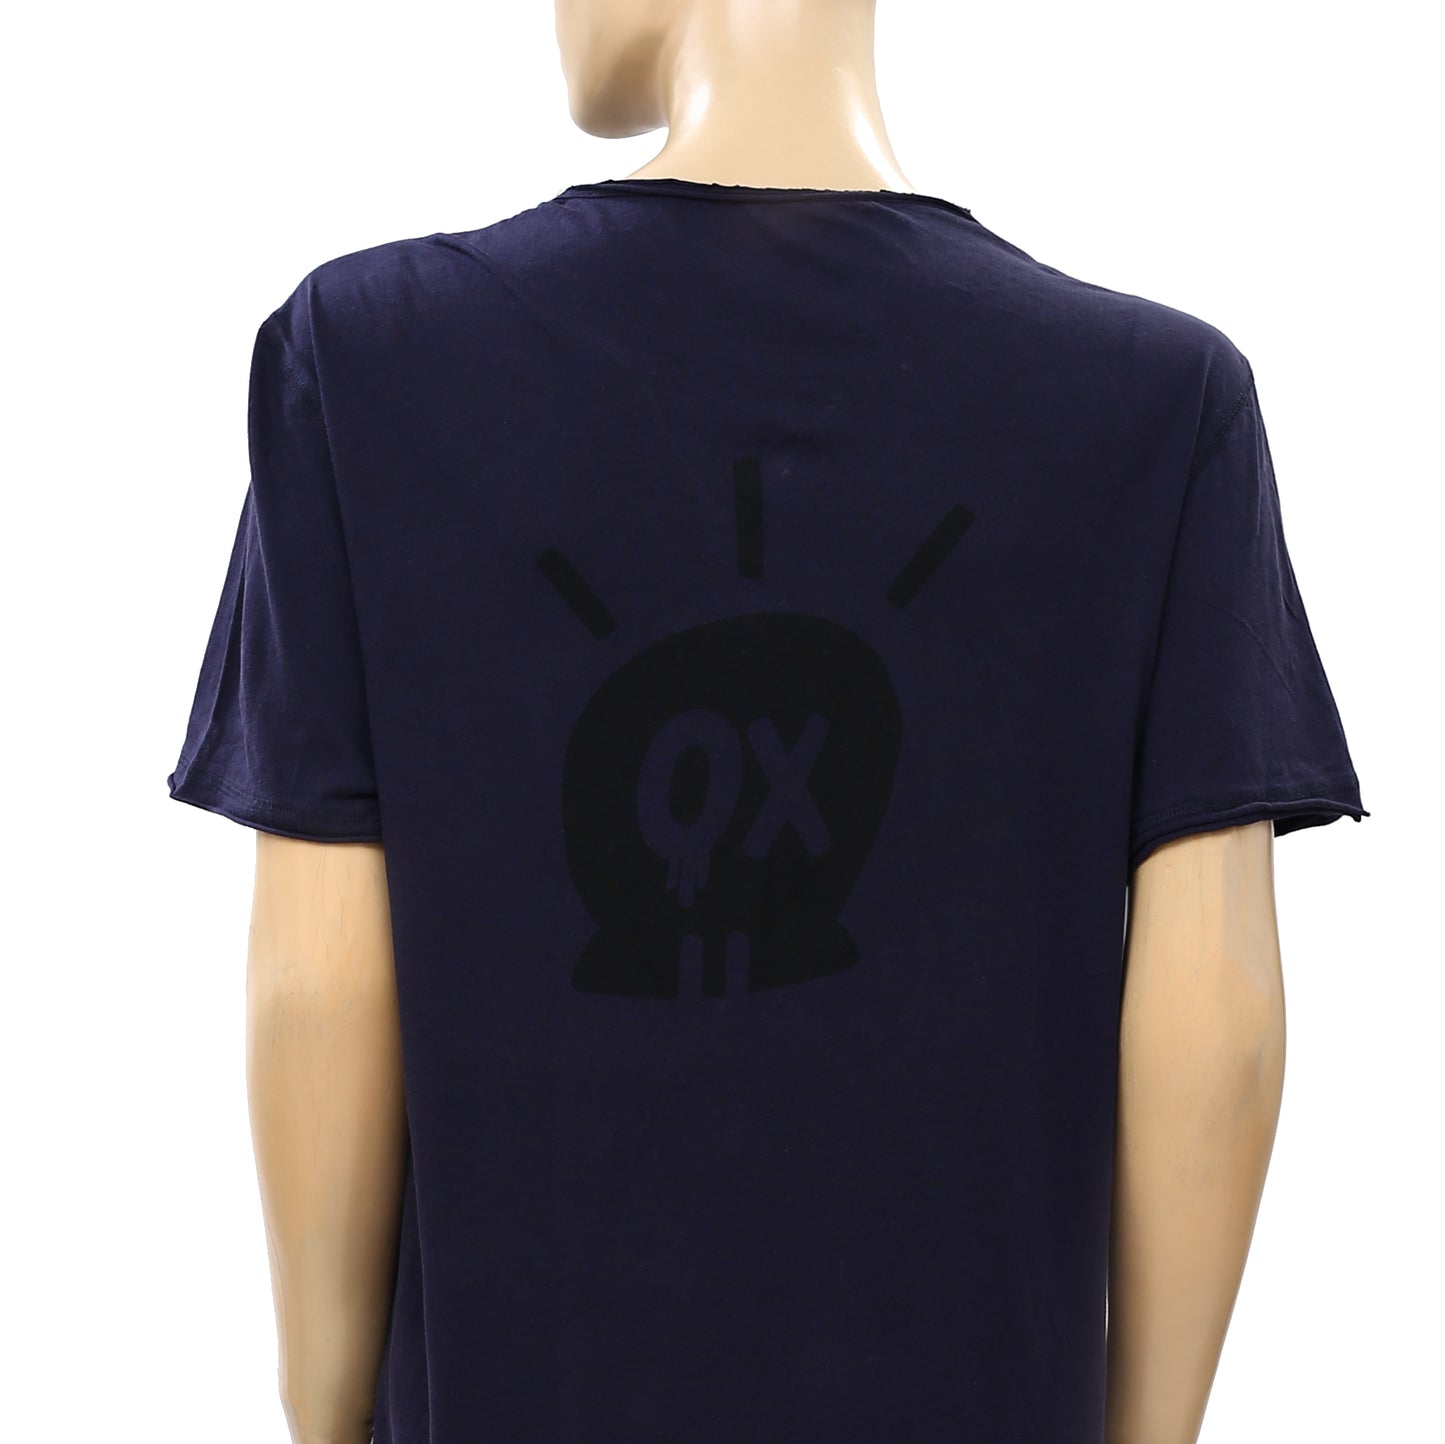 Zadig & Voltaire Monastir MC Jormi OX T-Shirt Tunic Top